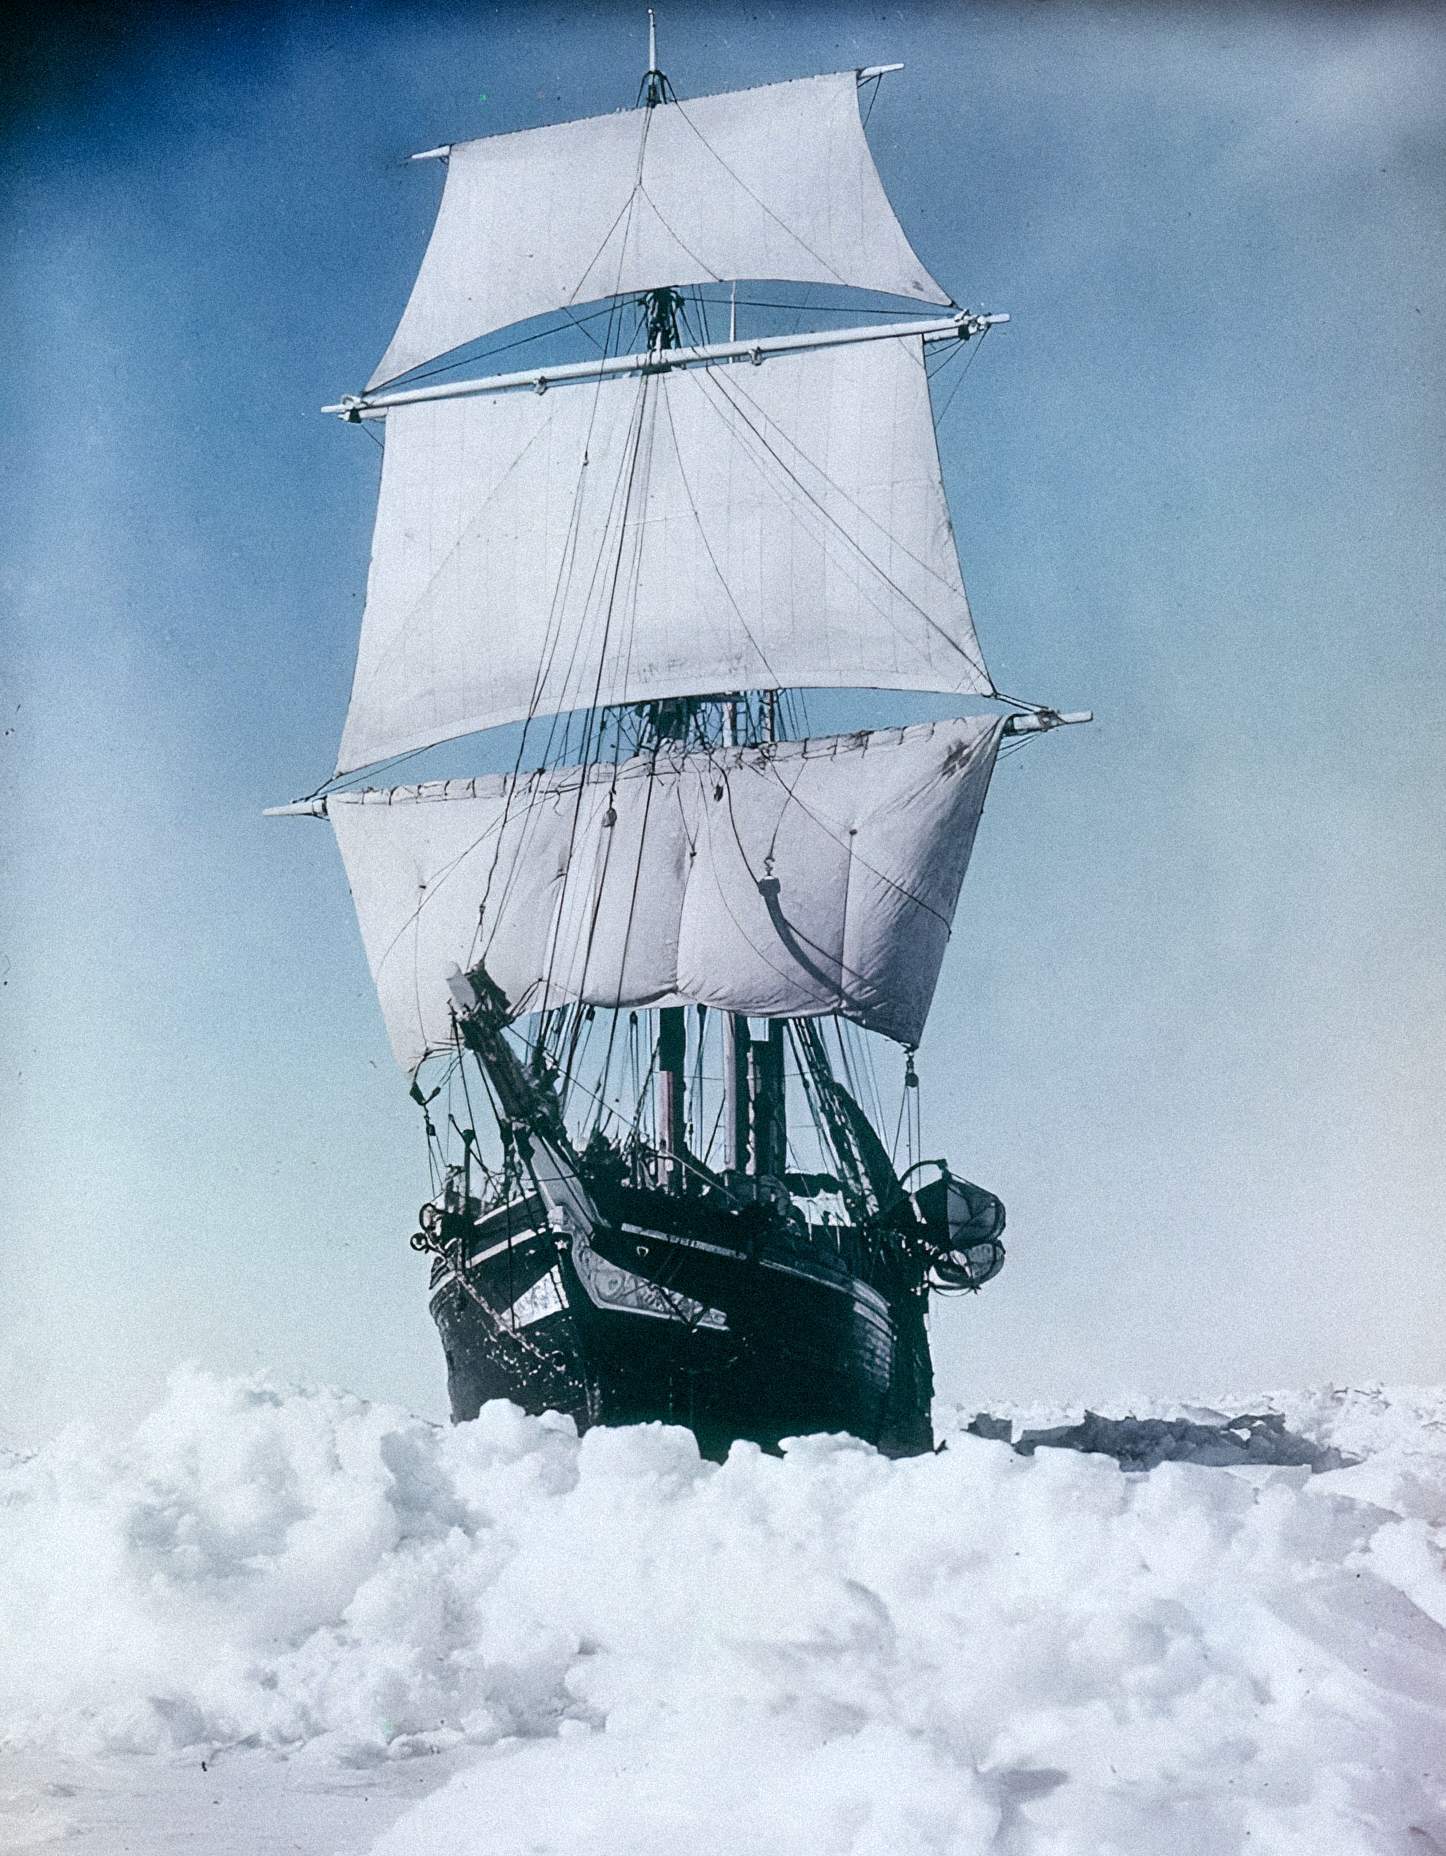 Endurance sob vapor e vela tentando romper gelo no Mar de Weddell na Expedição Imperial Transantártica, 1915, por Frank Hurley.